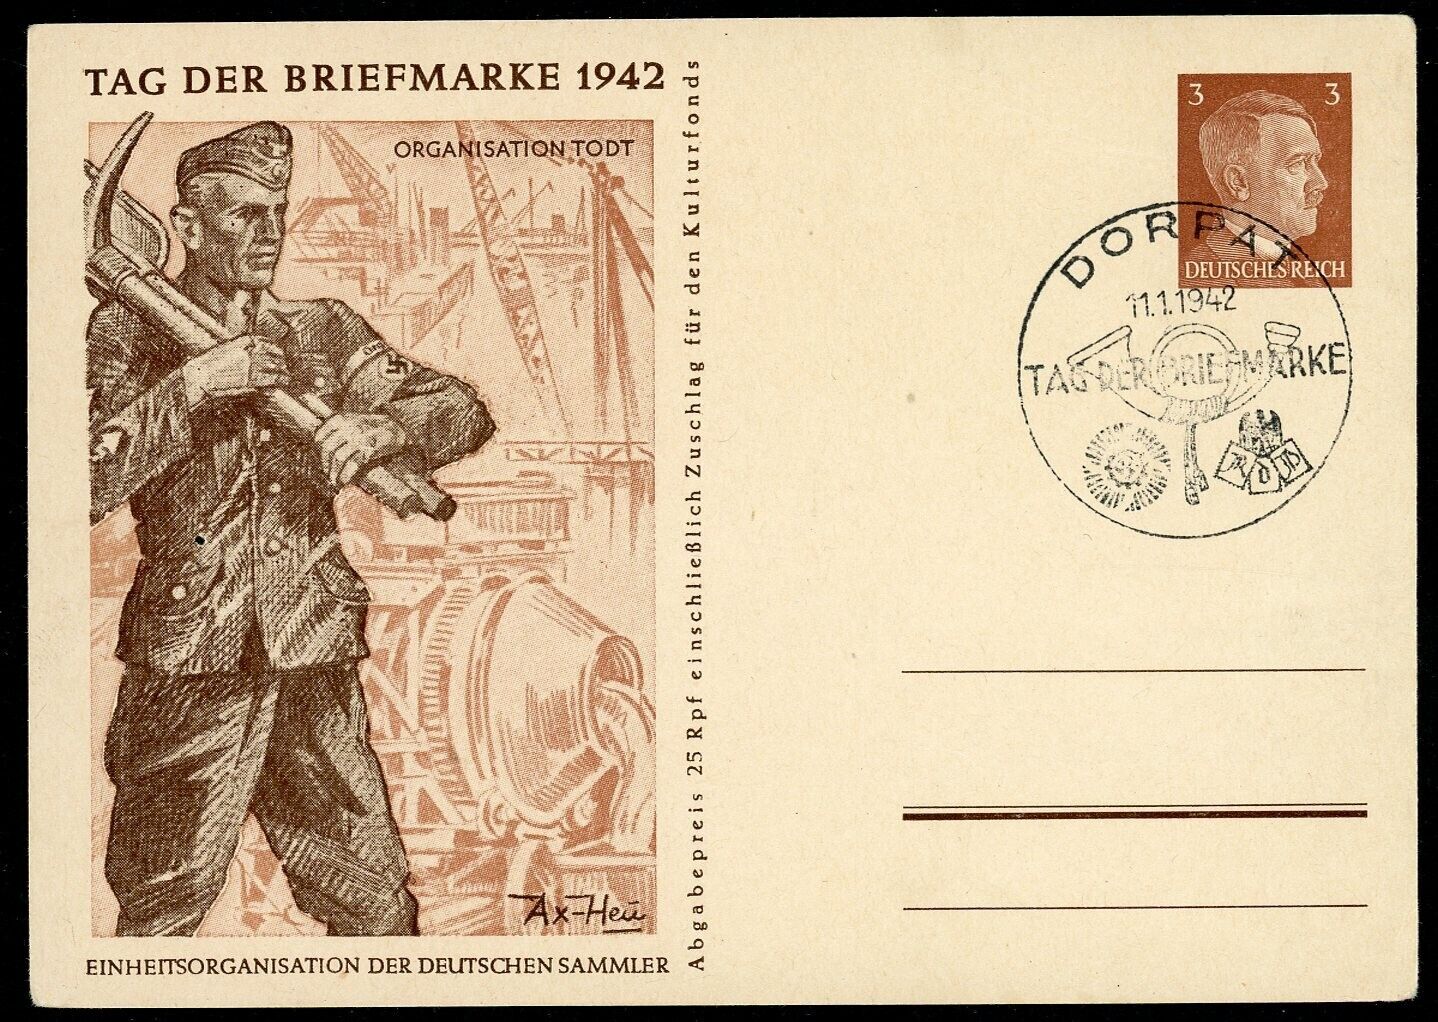 Tag der Briefmarke German Postcard ORG TODT Adolf Hitler Stamp Swastika Postmark